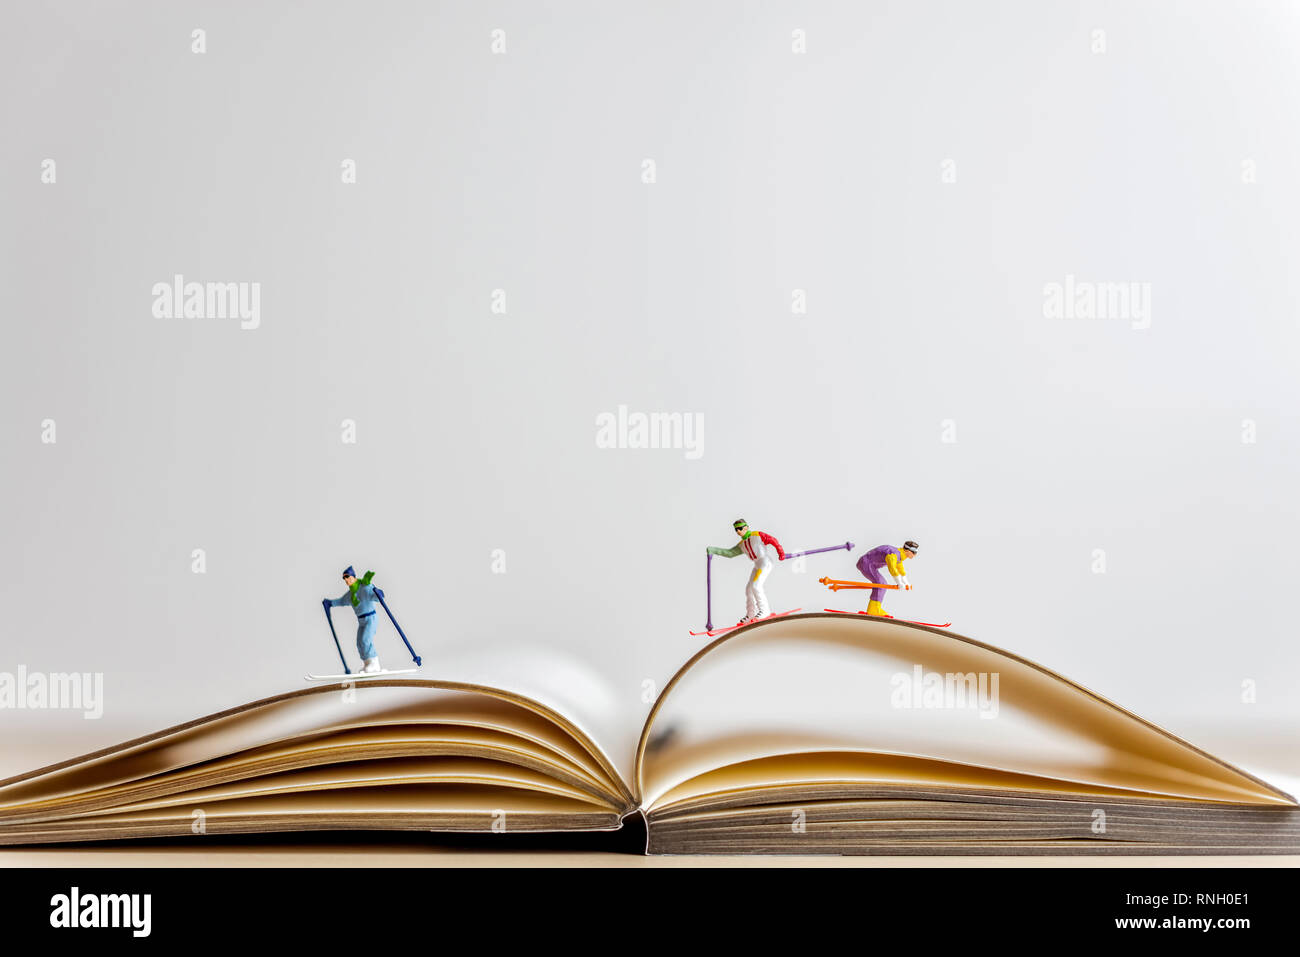 Les skieurs en glissant sur la miniature livre ouvert. Banque D'Images